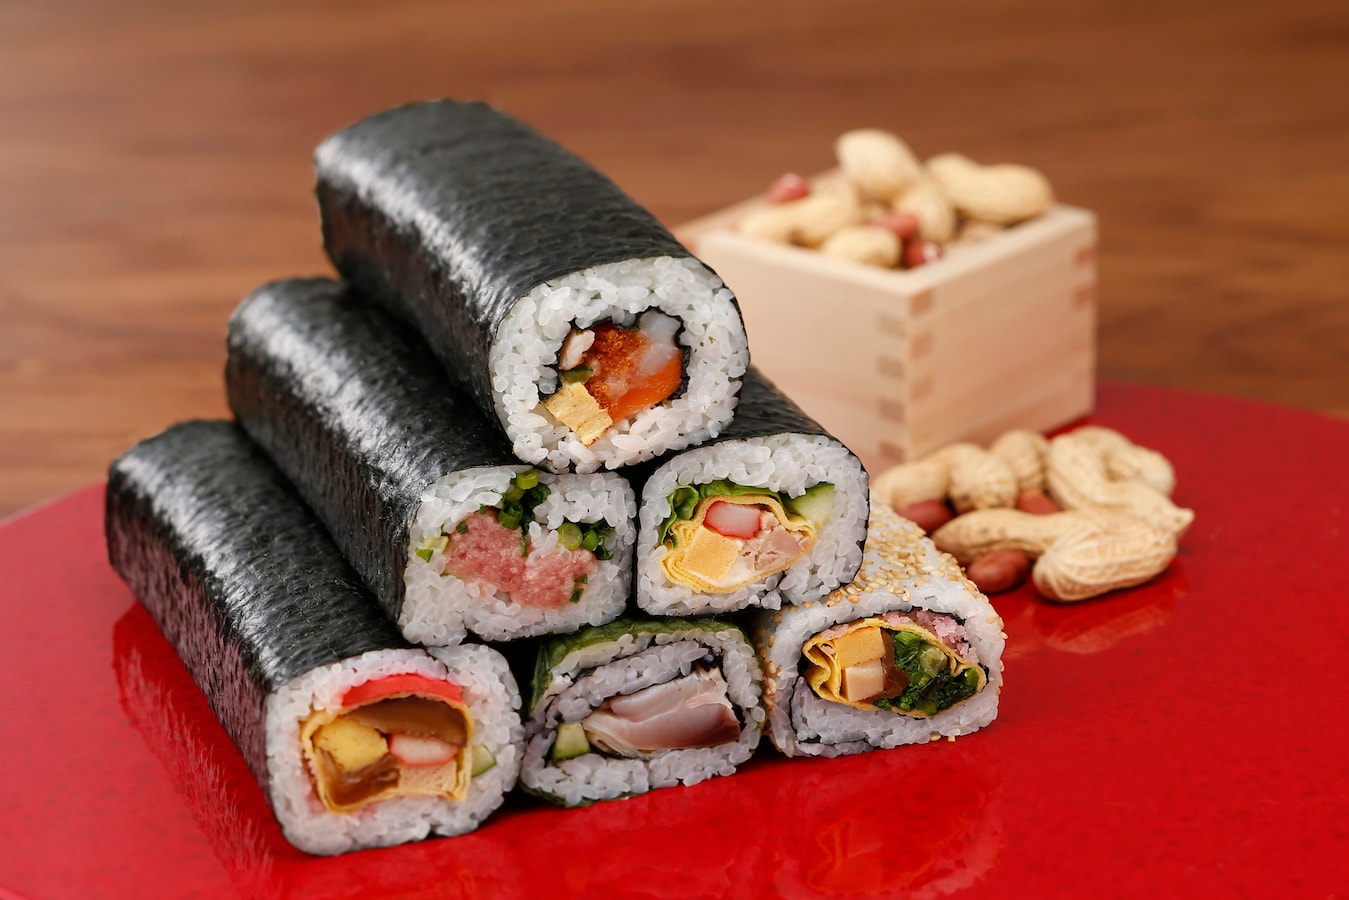 用筷子将寿司卷卷在厚木板寿司卷上. 日本食品 库存图片. 图片 包括有 食物, 菜单, 筷子, 日本, 三文鱼 - 228793155